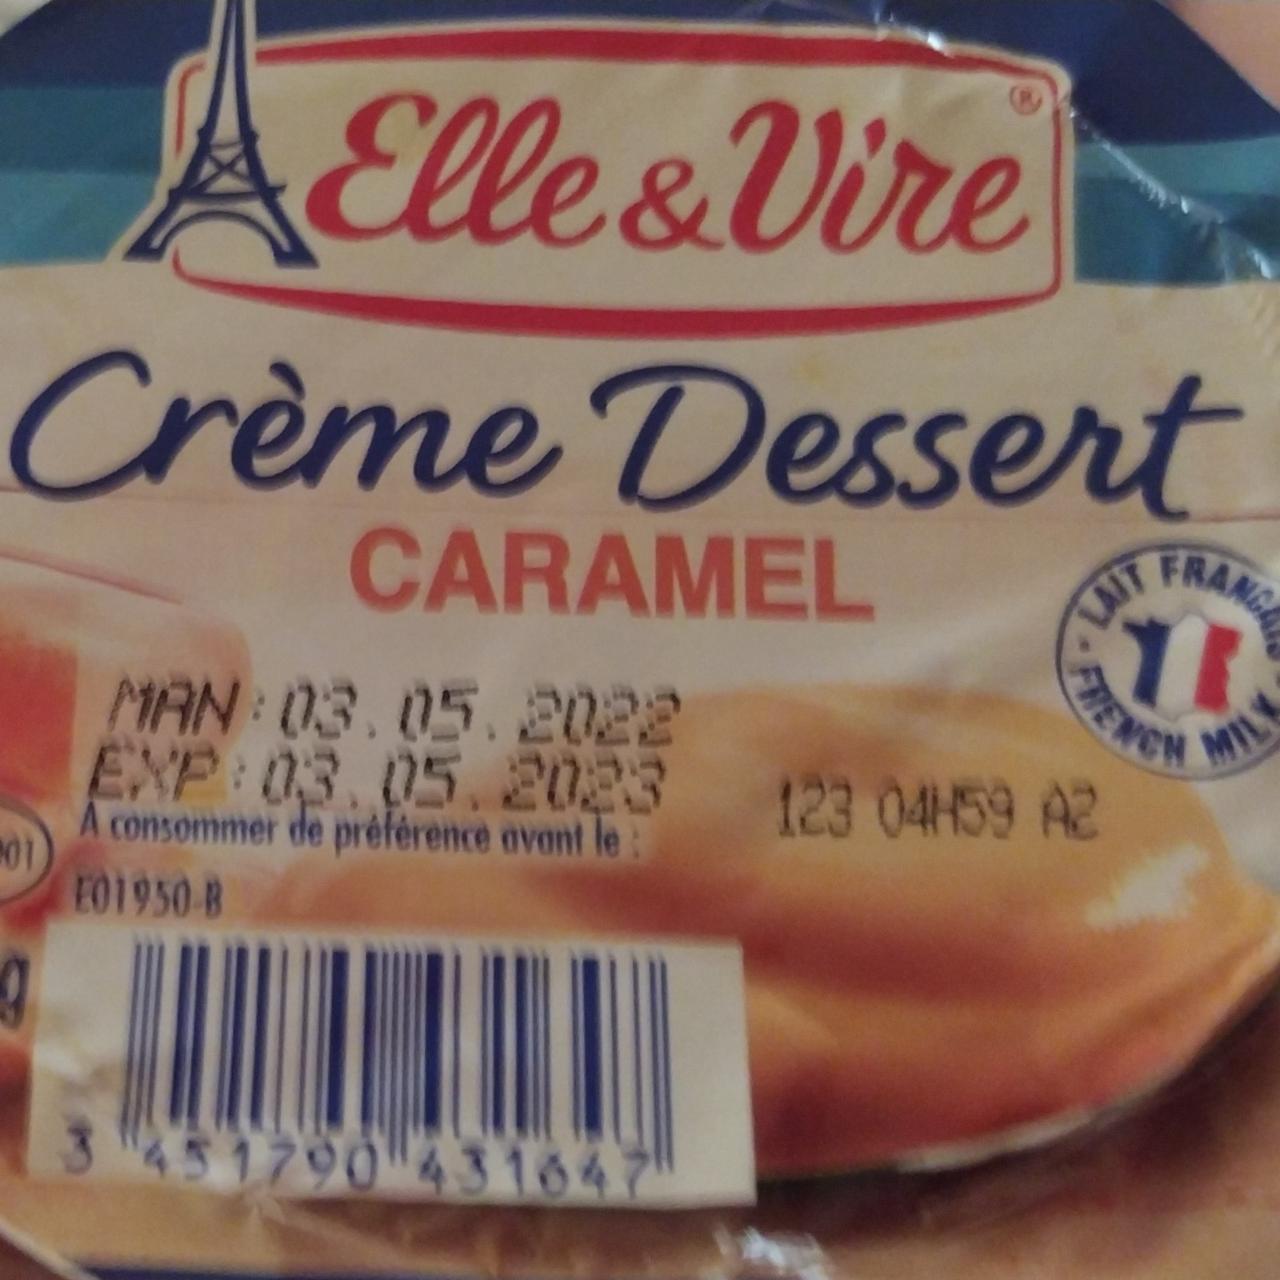 Fotografie - Crème Dessert Caramel Elle & Vire